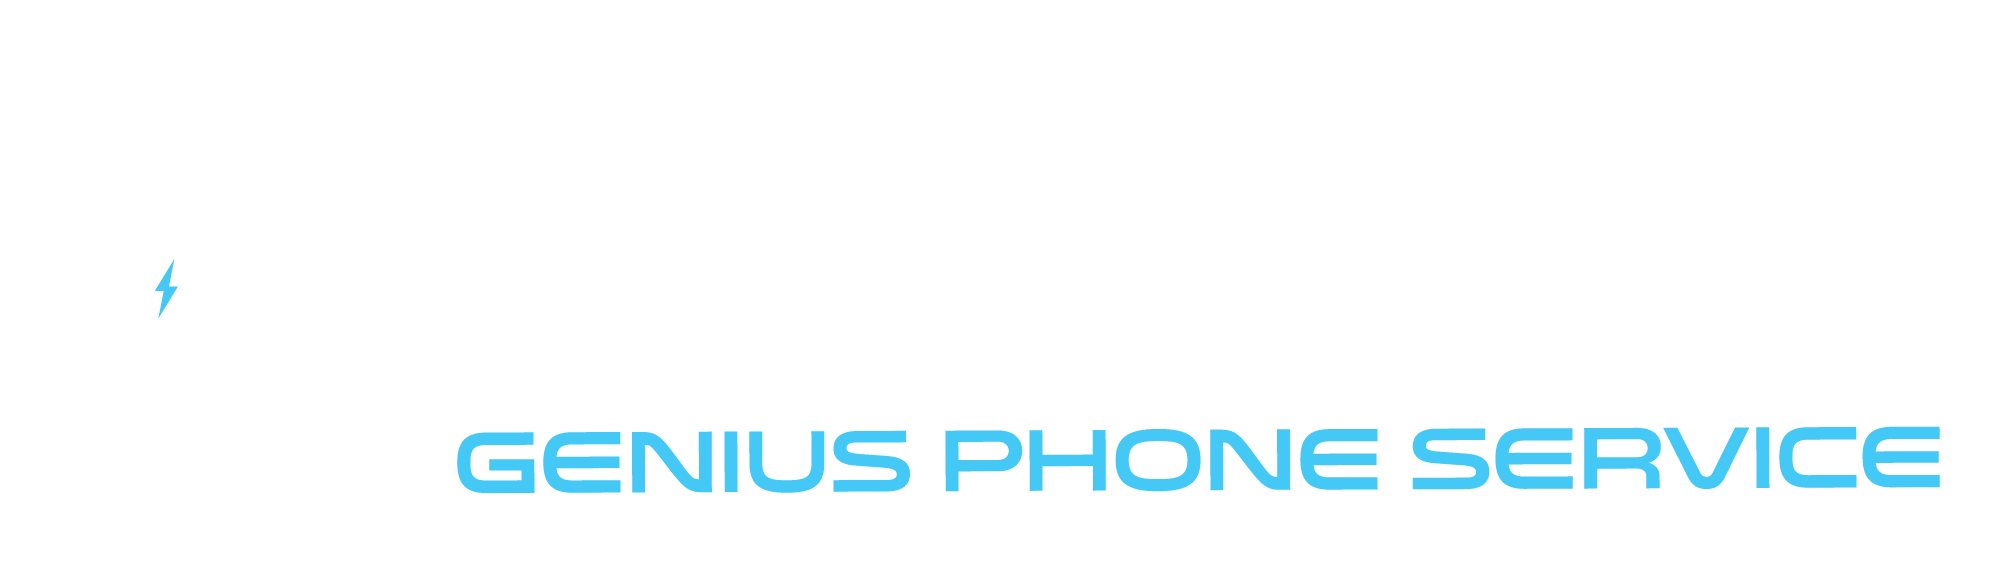 Genius Phone Service